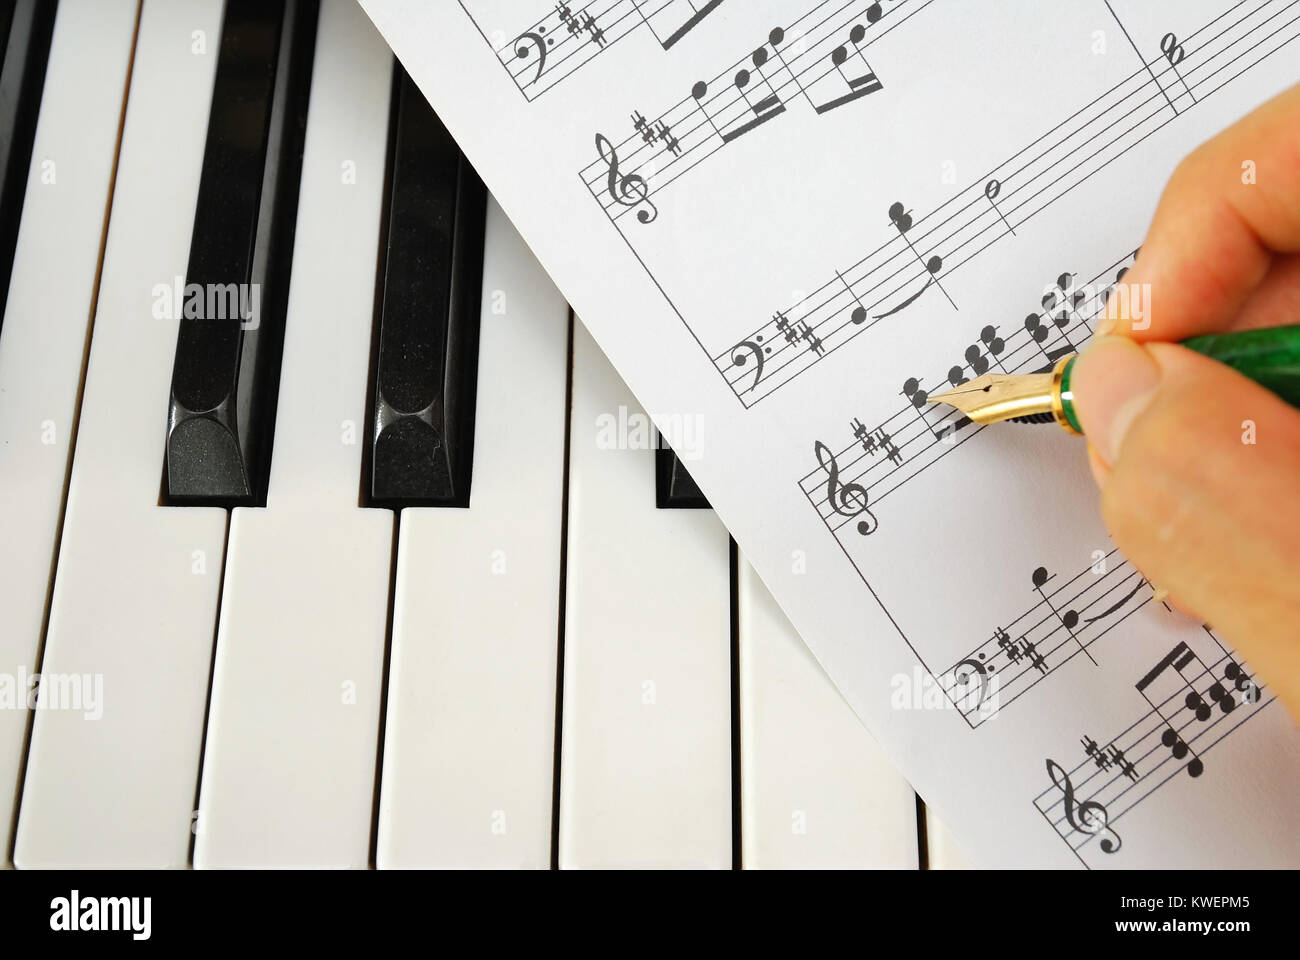 Componer música y escribir en la partitura de música en un teclado de piano  en blanco y negro. Para conceptos como la música y la creatividad  Fotografía de stock - Alamy